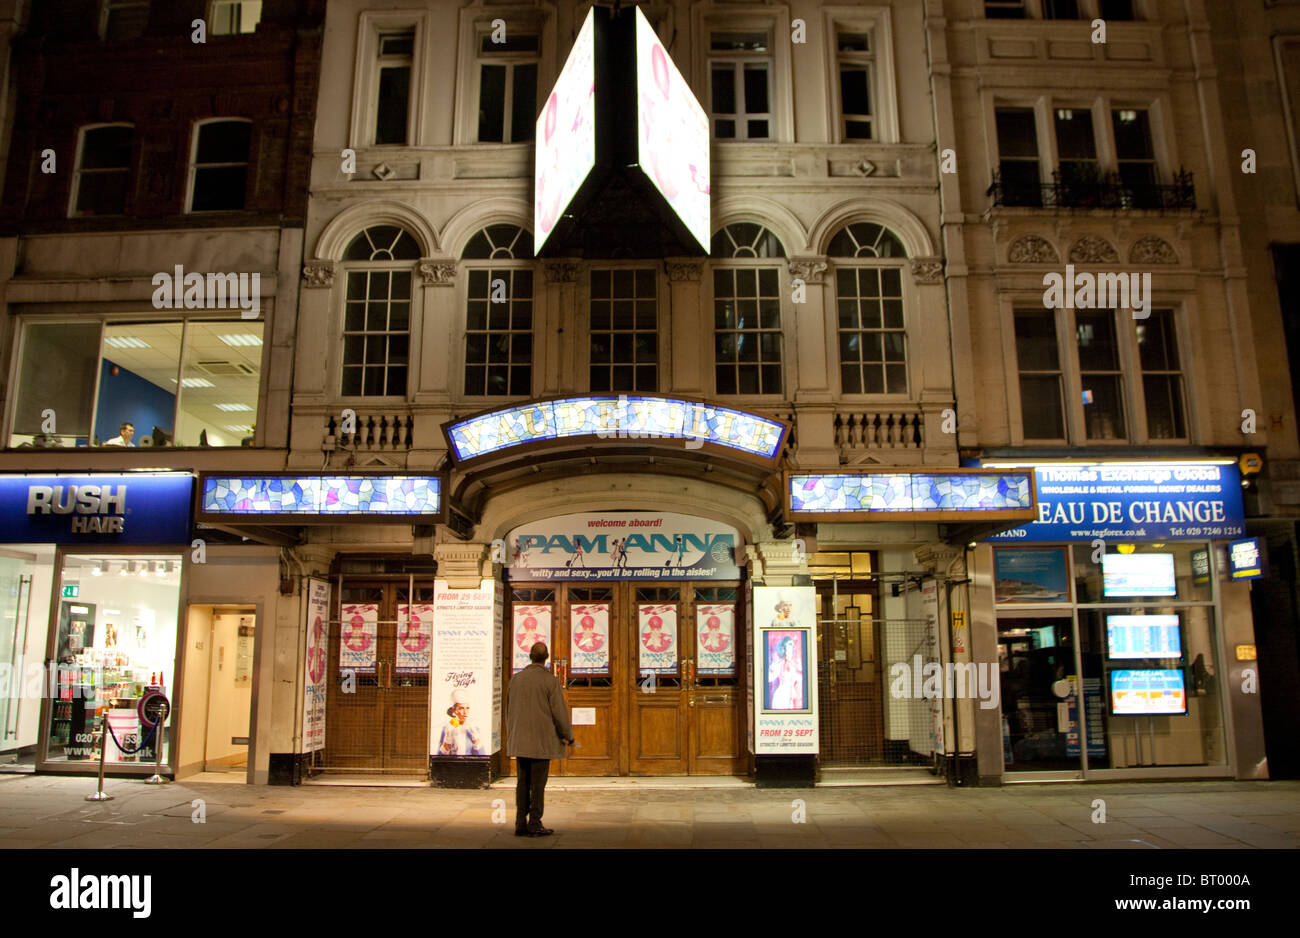 Vaudeville Theatre, Strand, London Stock Photo